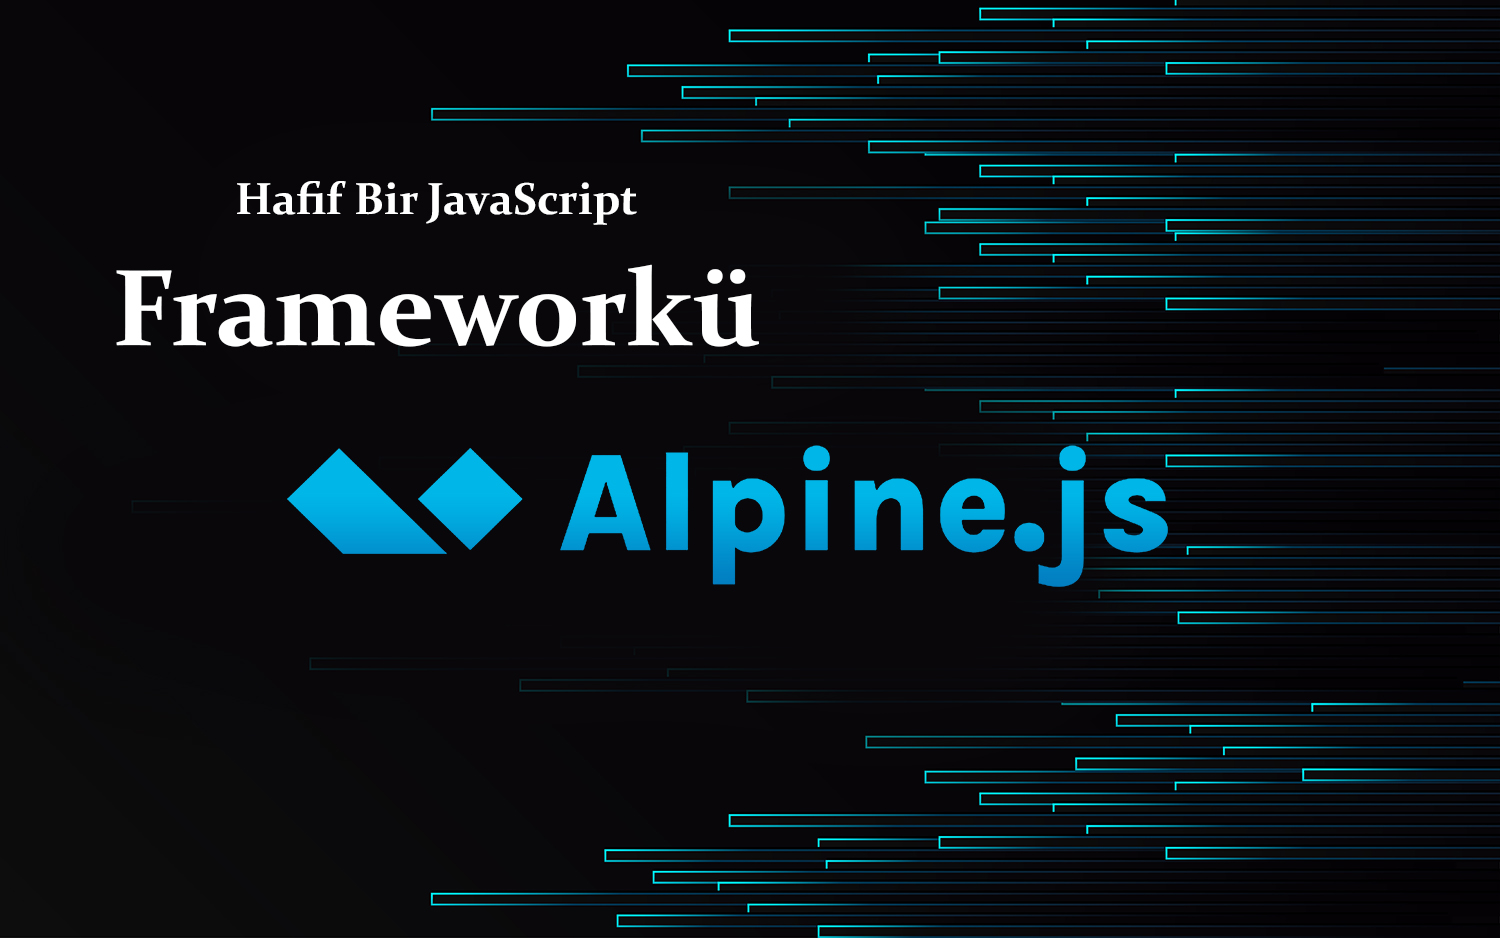 Hafif Bir JavaScript Frameworkü Olan Alpine.js